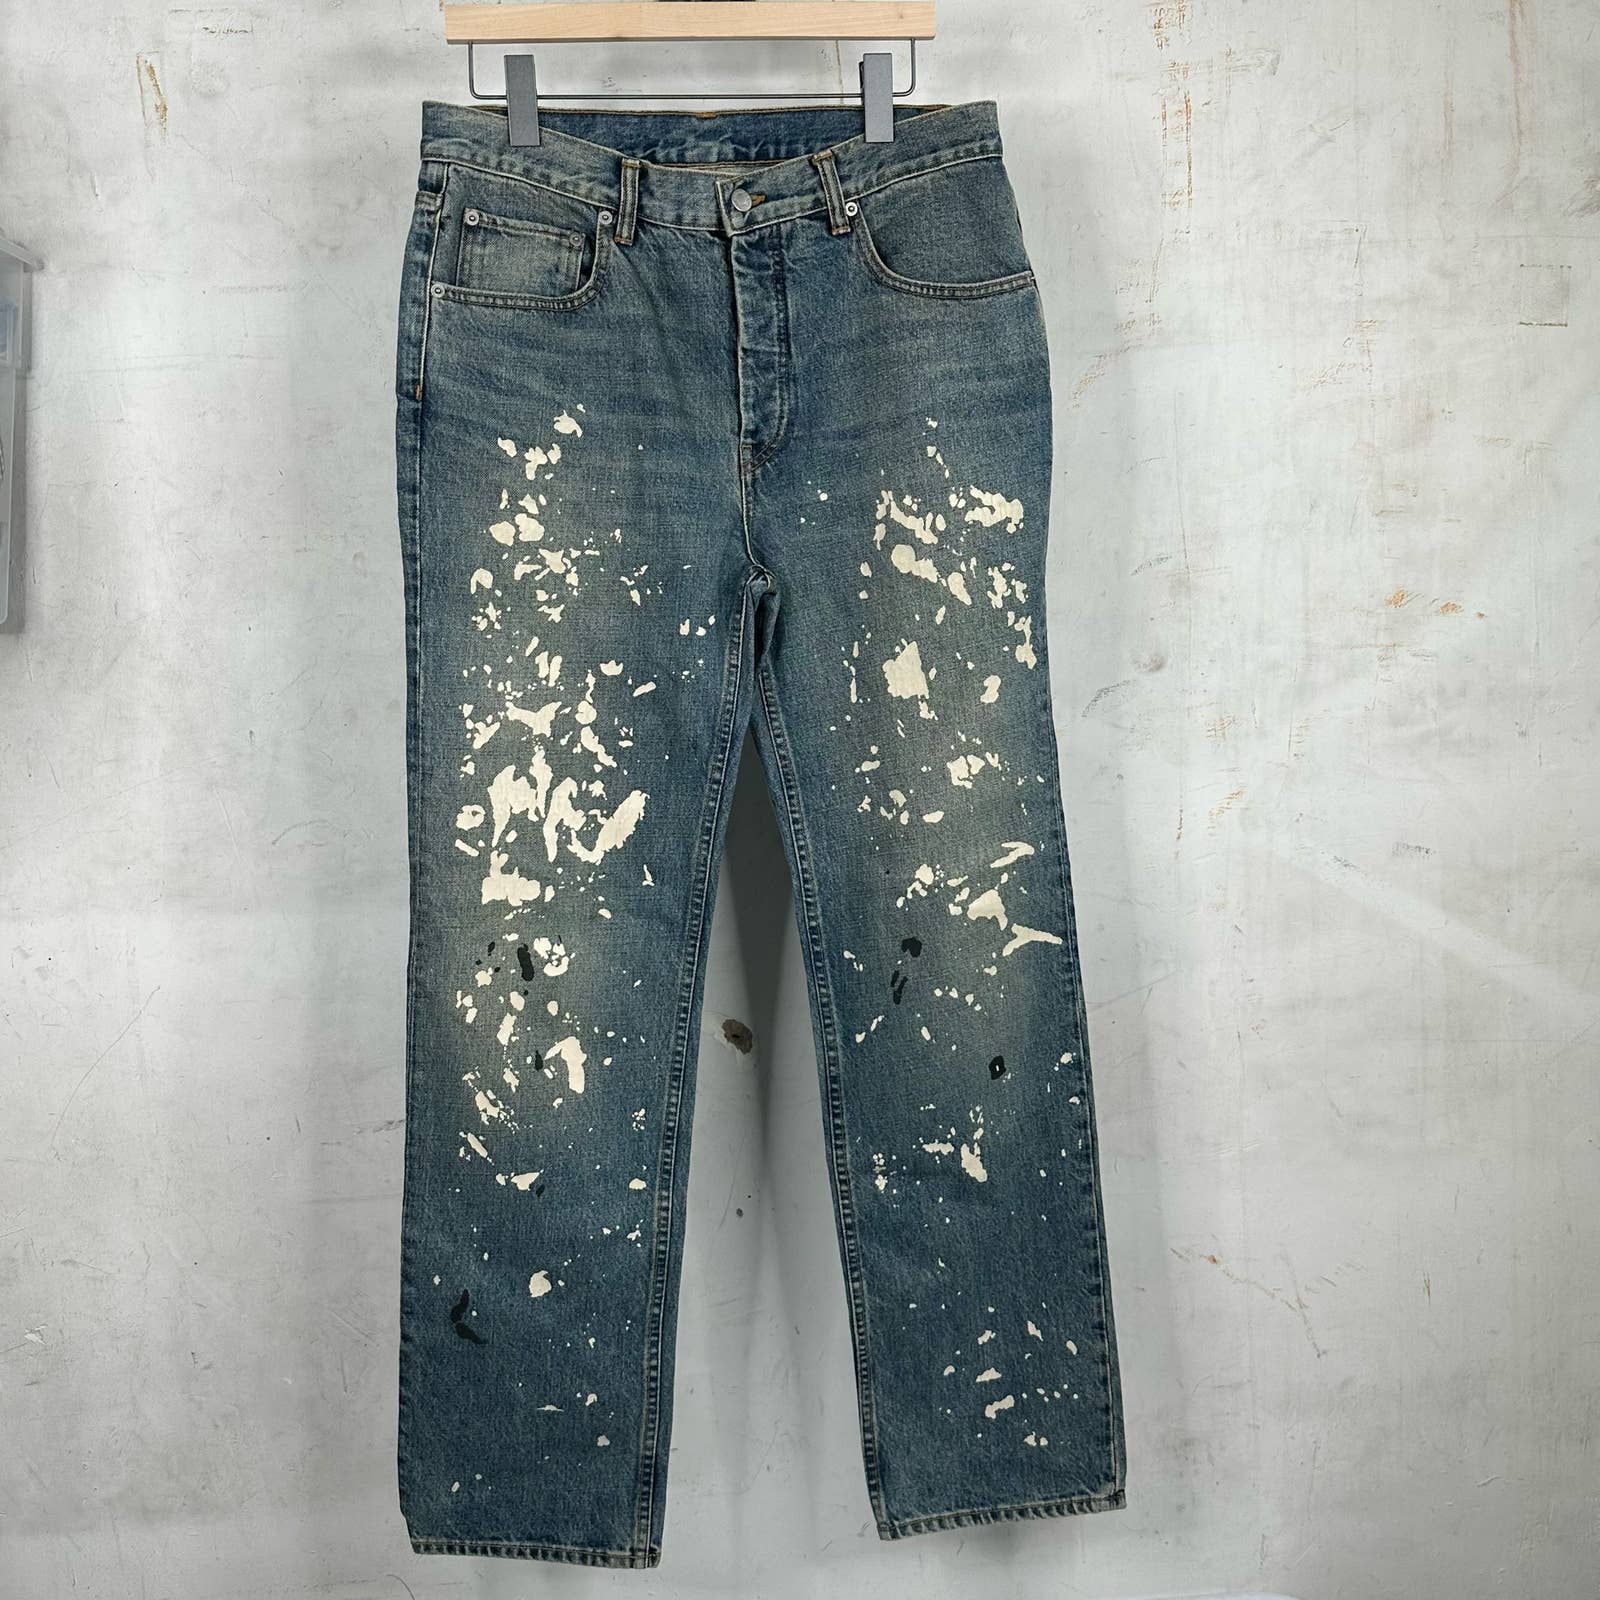 Helmut Lang Paint Splatter Jeans Re-Edition